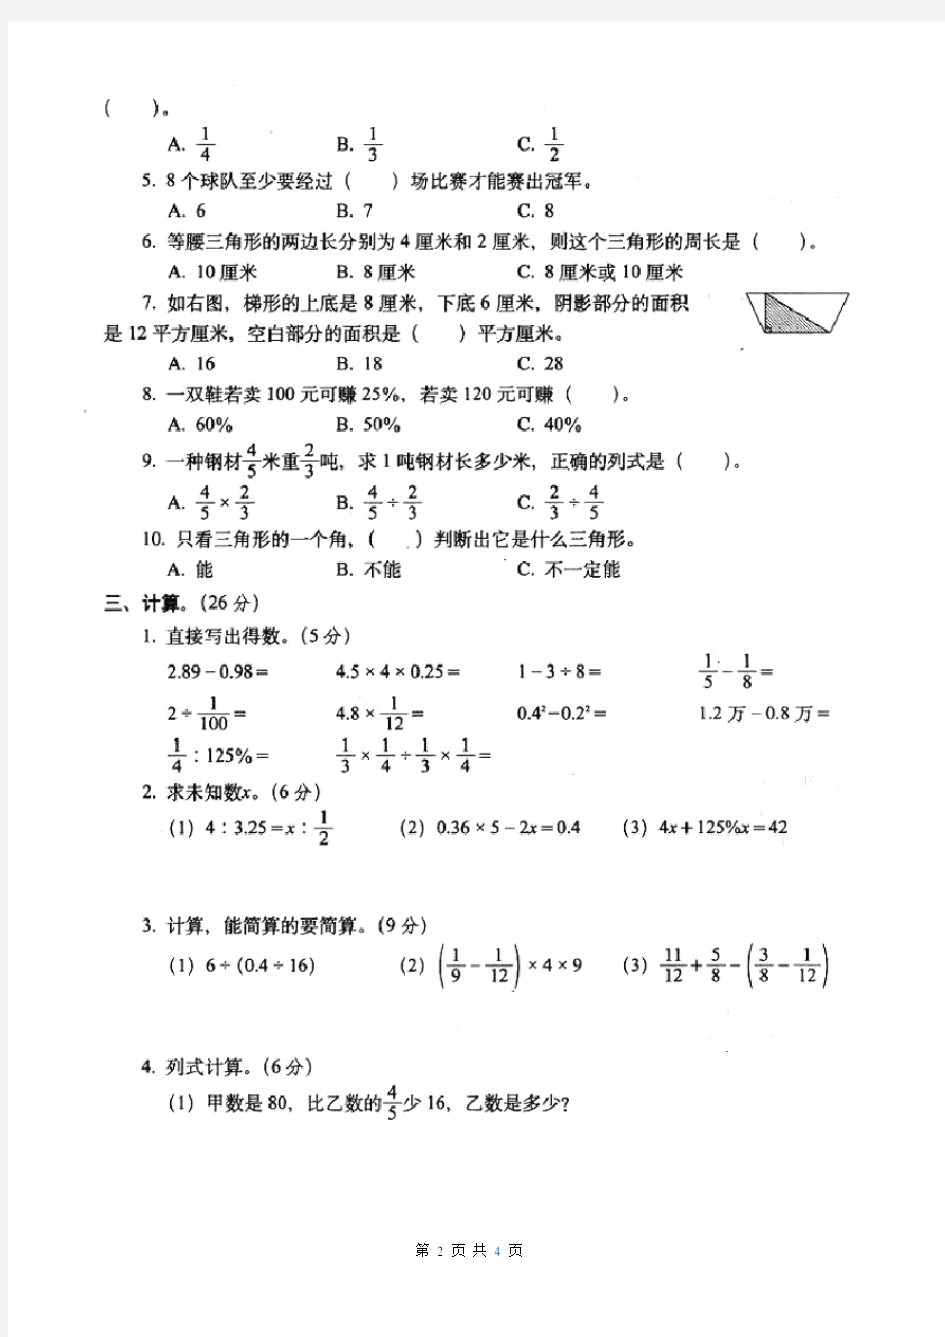 人教版六年级数学毕业升学考试试卷(统考)